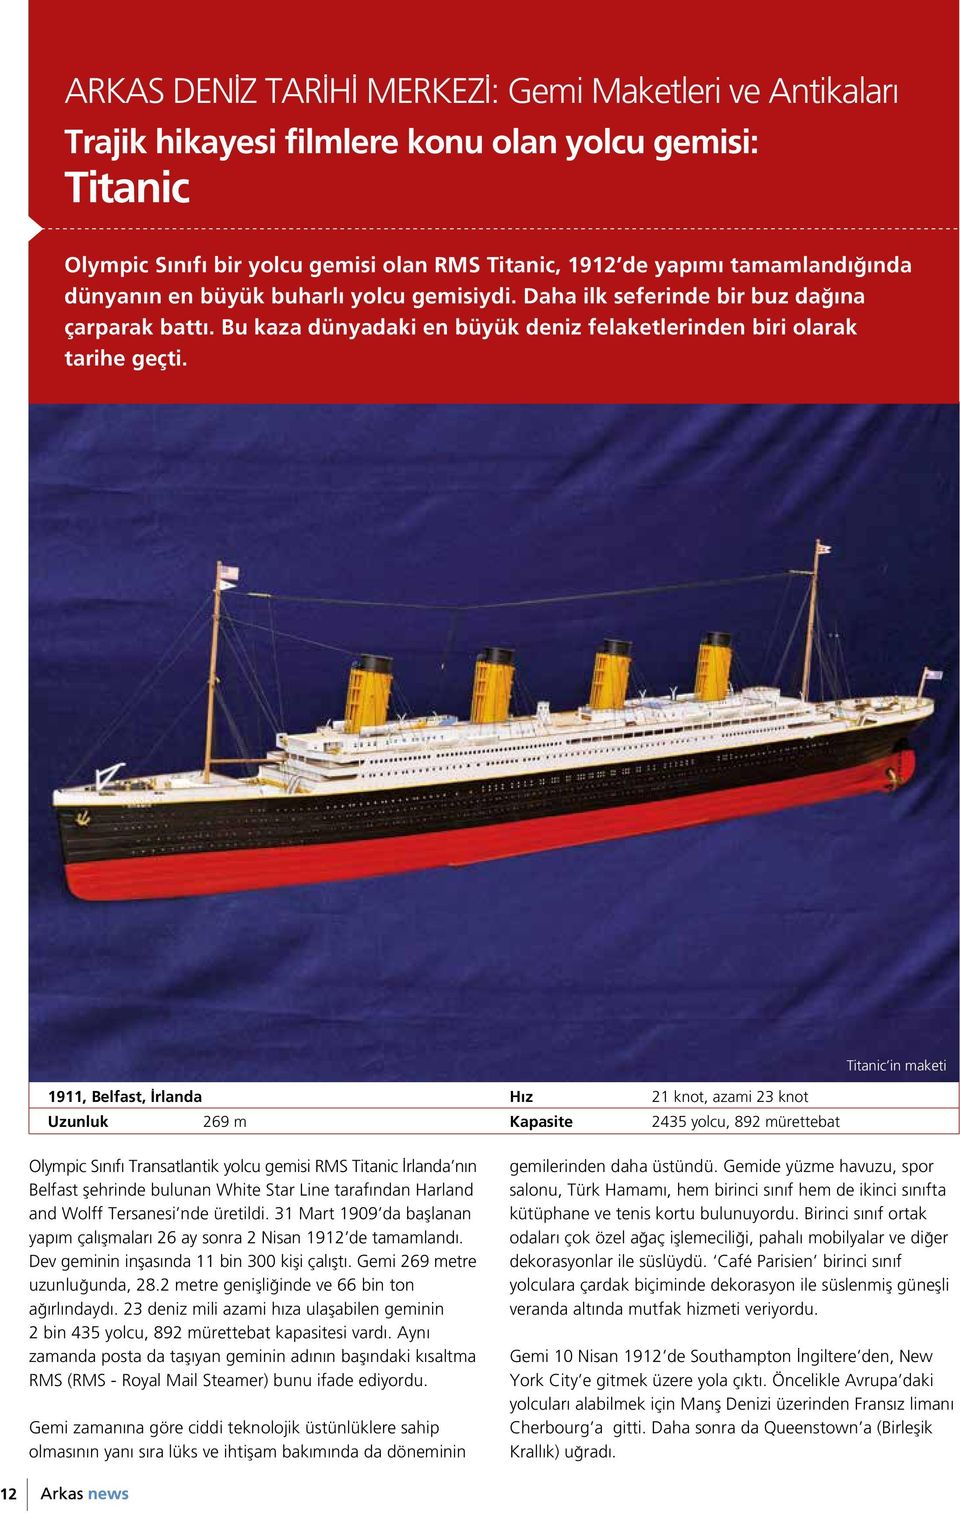 1911, Belfast, İrlanda Hız 21 knot, azami 23 knot Uzunluk 269 m Kapasite 2435 yolcu, 892 mürettebat Titanic in maketi Olympic Sınıfı Transatlantik yolcu gemisi RMS Titanic İrlanda nın Belfast